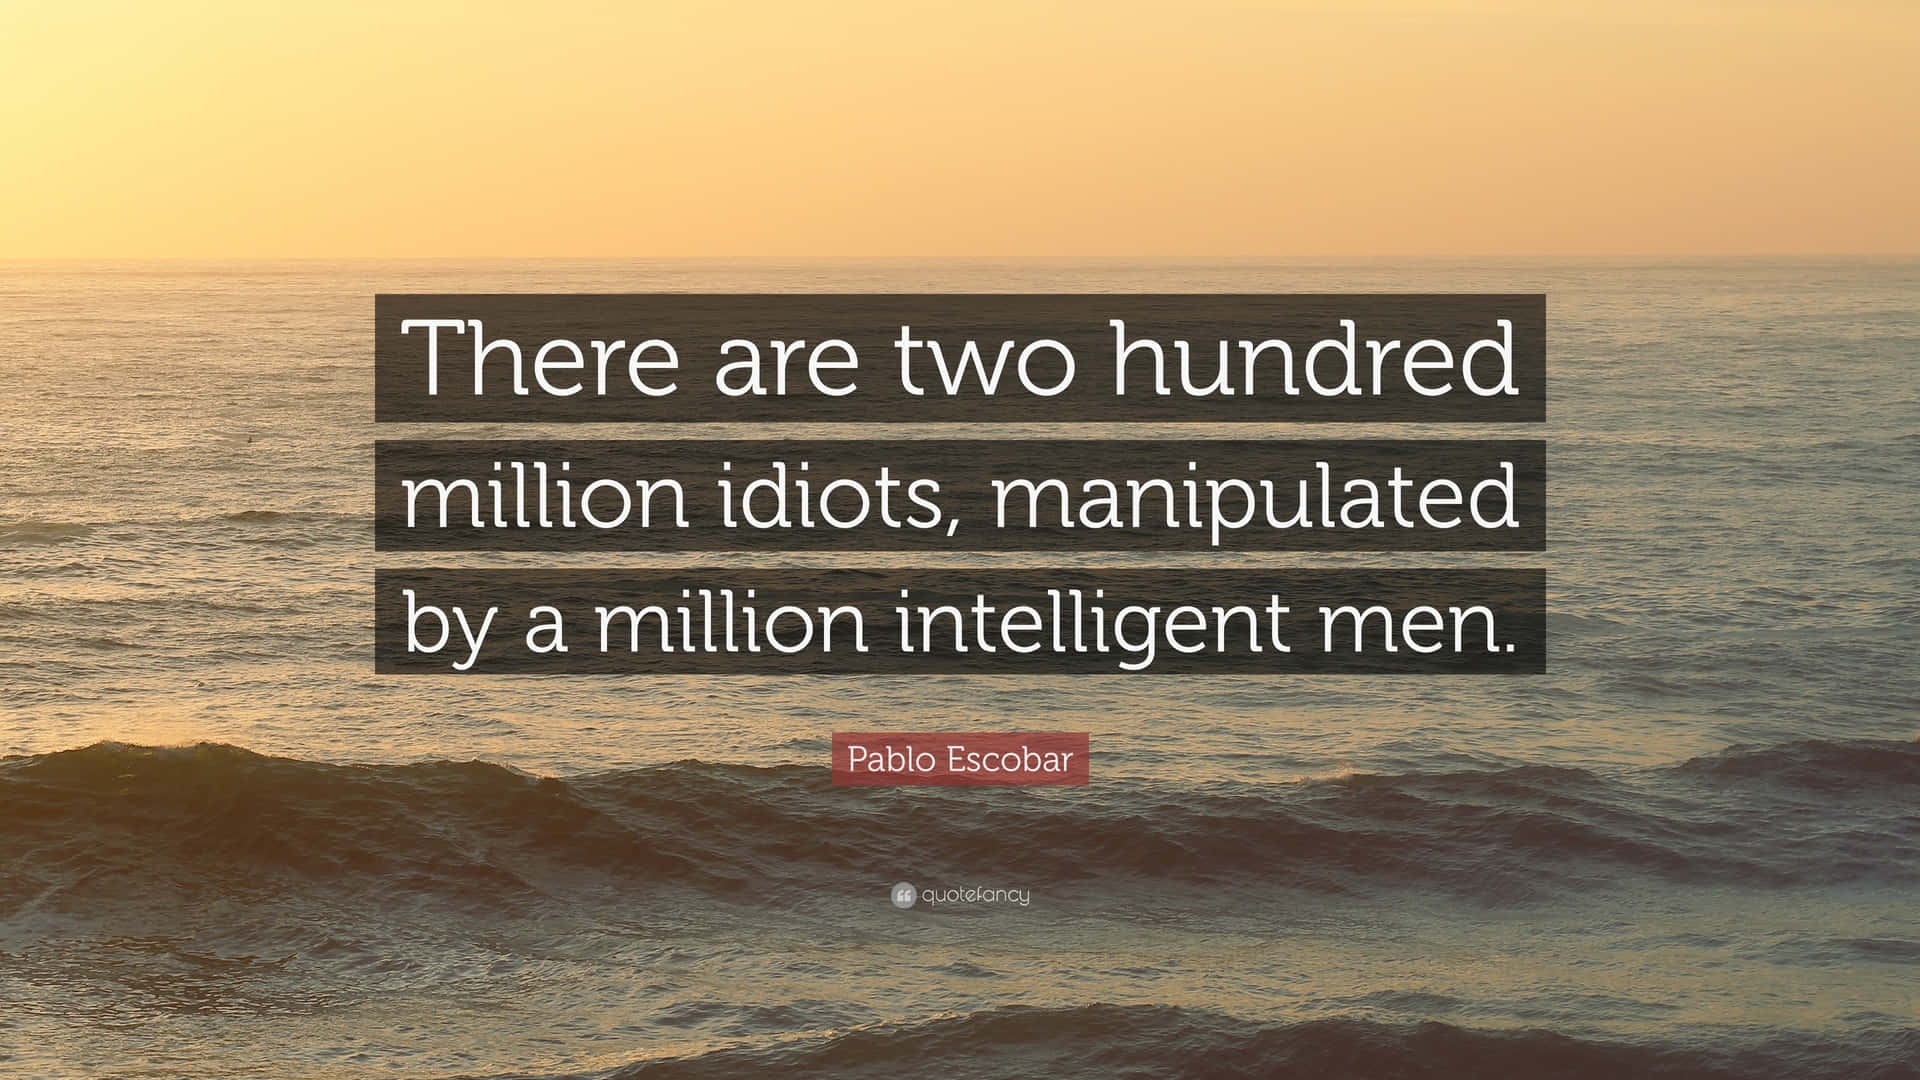 Haydoscientos Millones De Idiotas Controlados Por Un Millón De Hombres Inteligentes